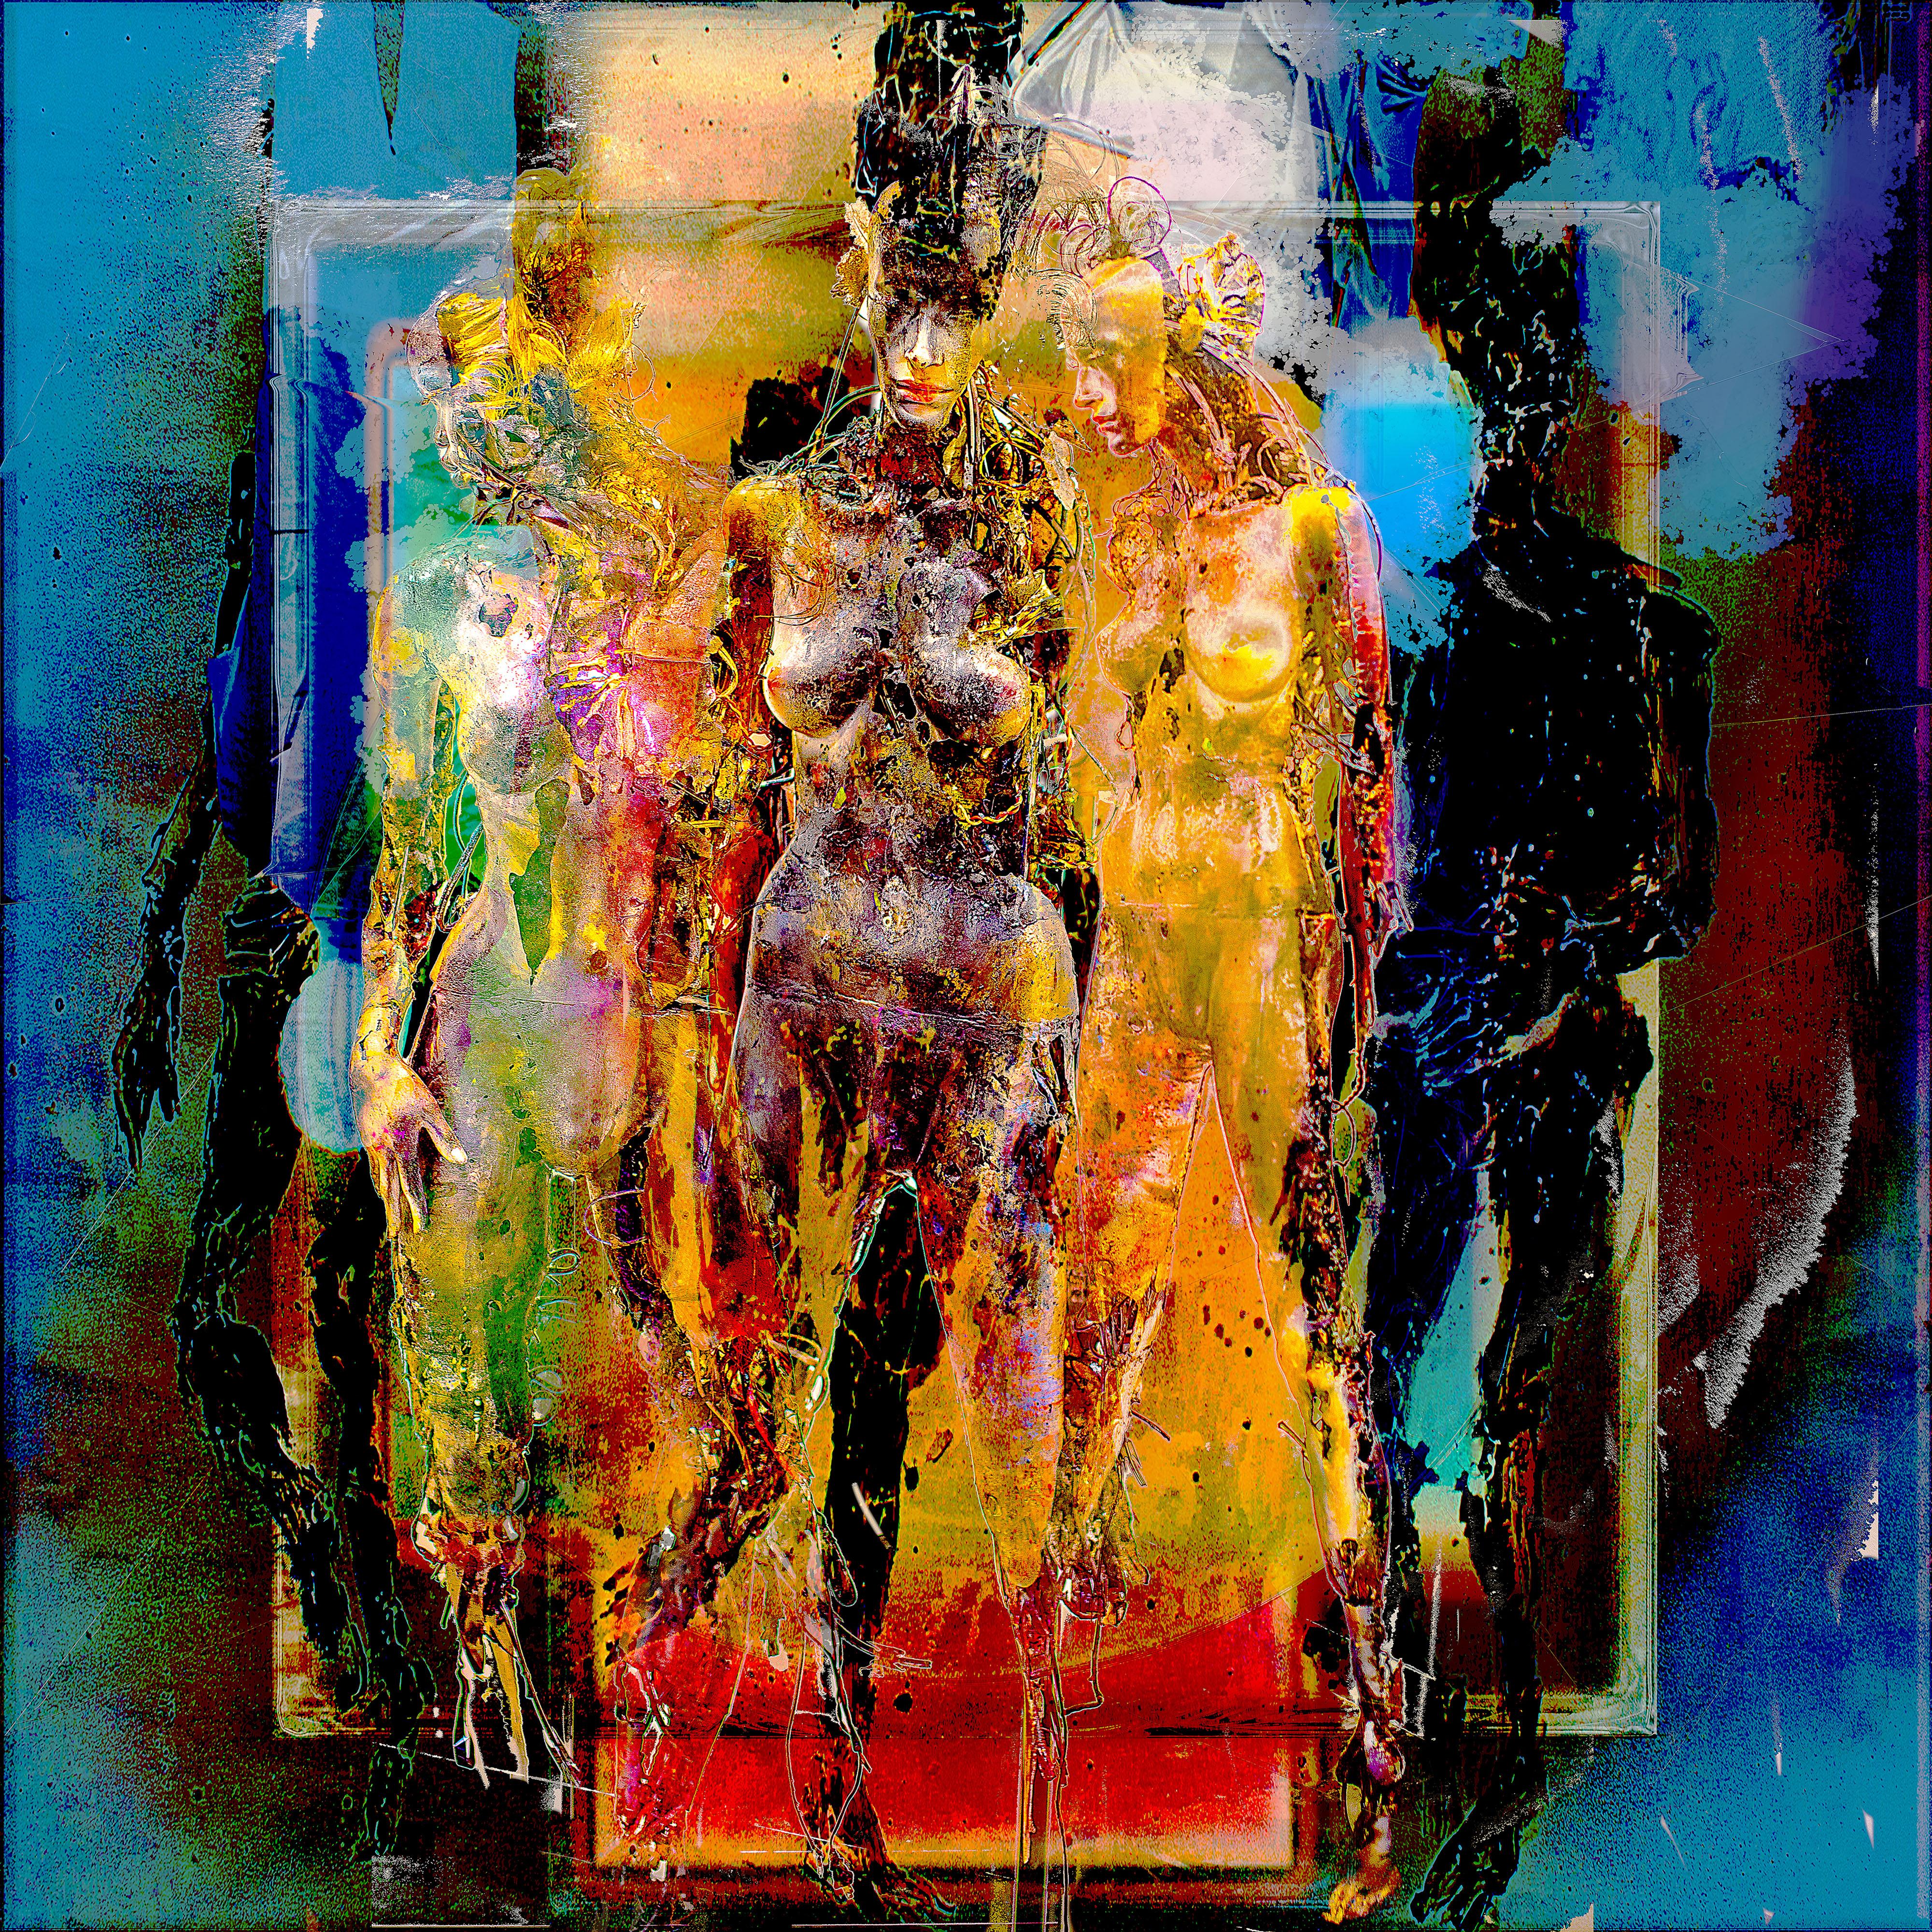 Abstract Photograph Jens-Christian Wittig - Peinture numérique « Figures encadrées », impression Lamda